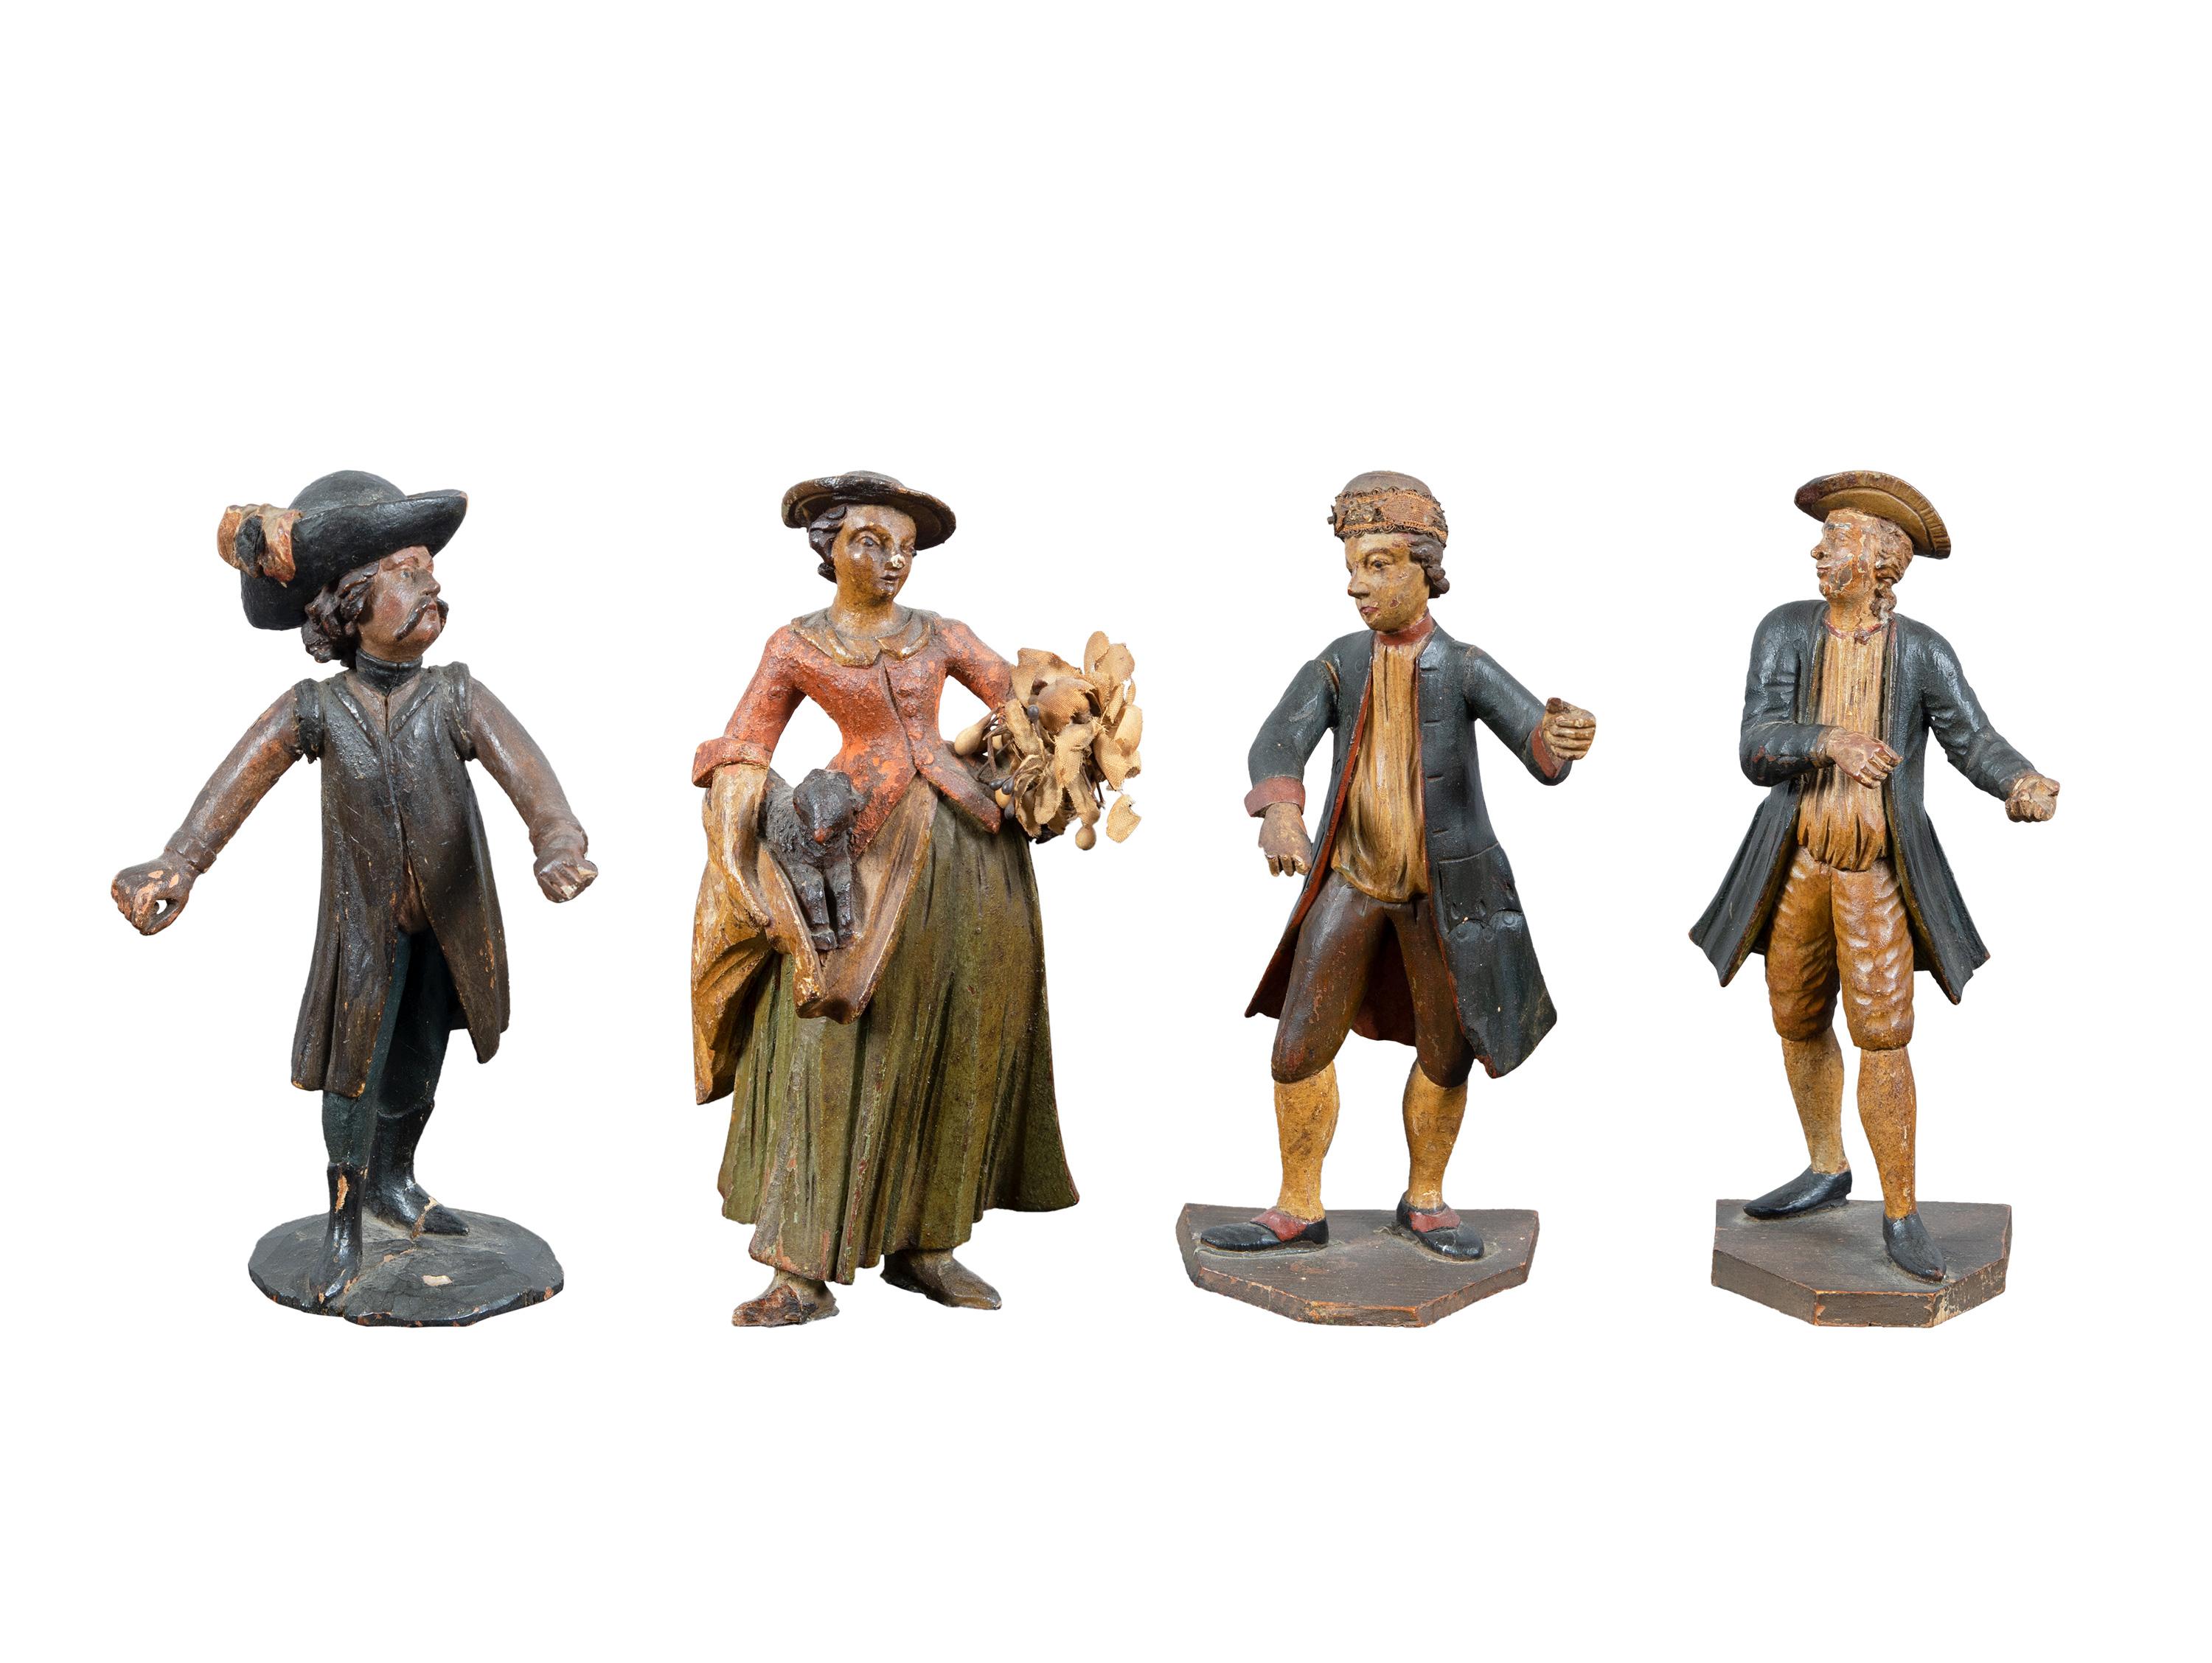 Gruppe von vier venezianischen Holzskulpturen aus dem 18. Jahrhundert – Venedig, bemalt und geschnitzt